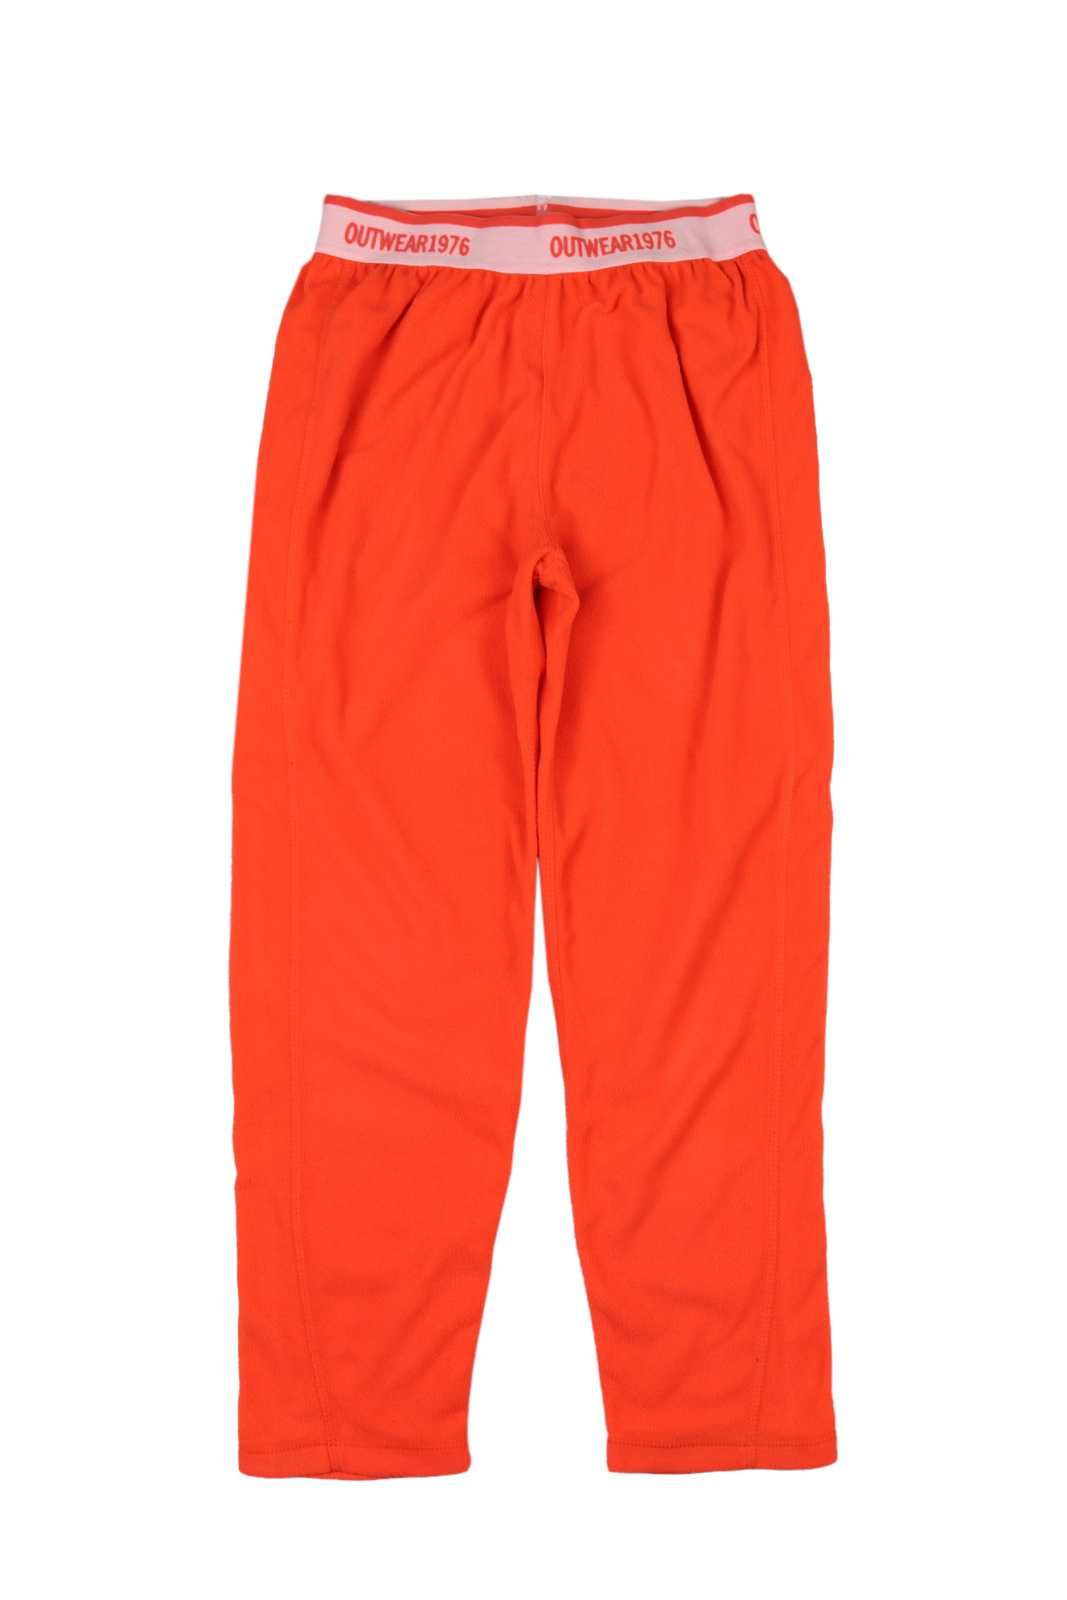 Outwear spodnie ciepłe polar neon pomarańcz _ 140